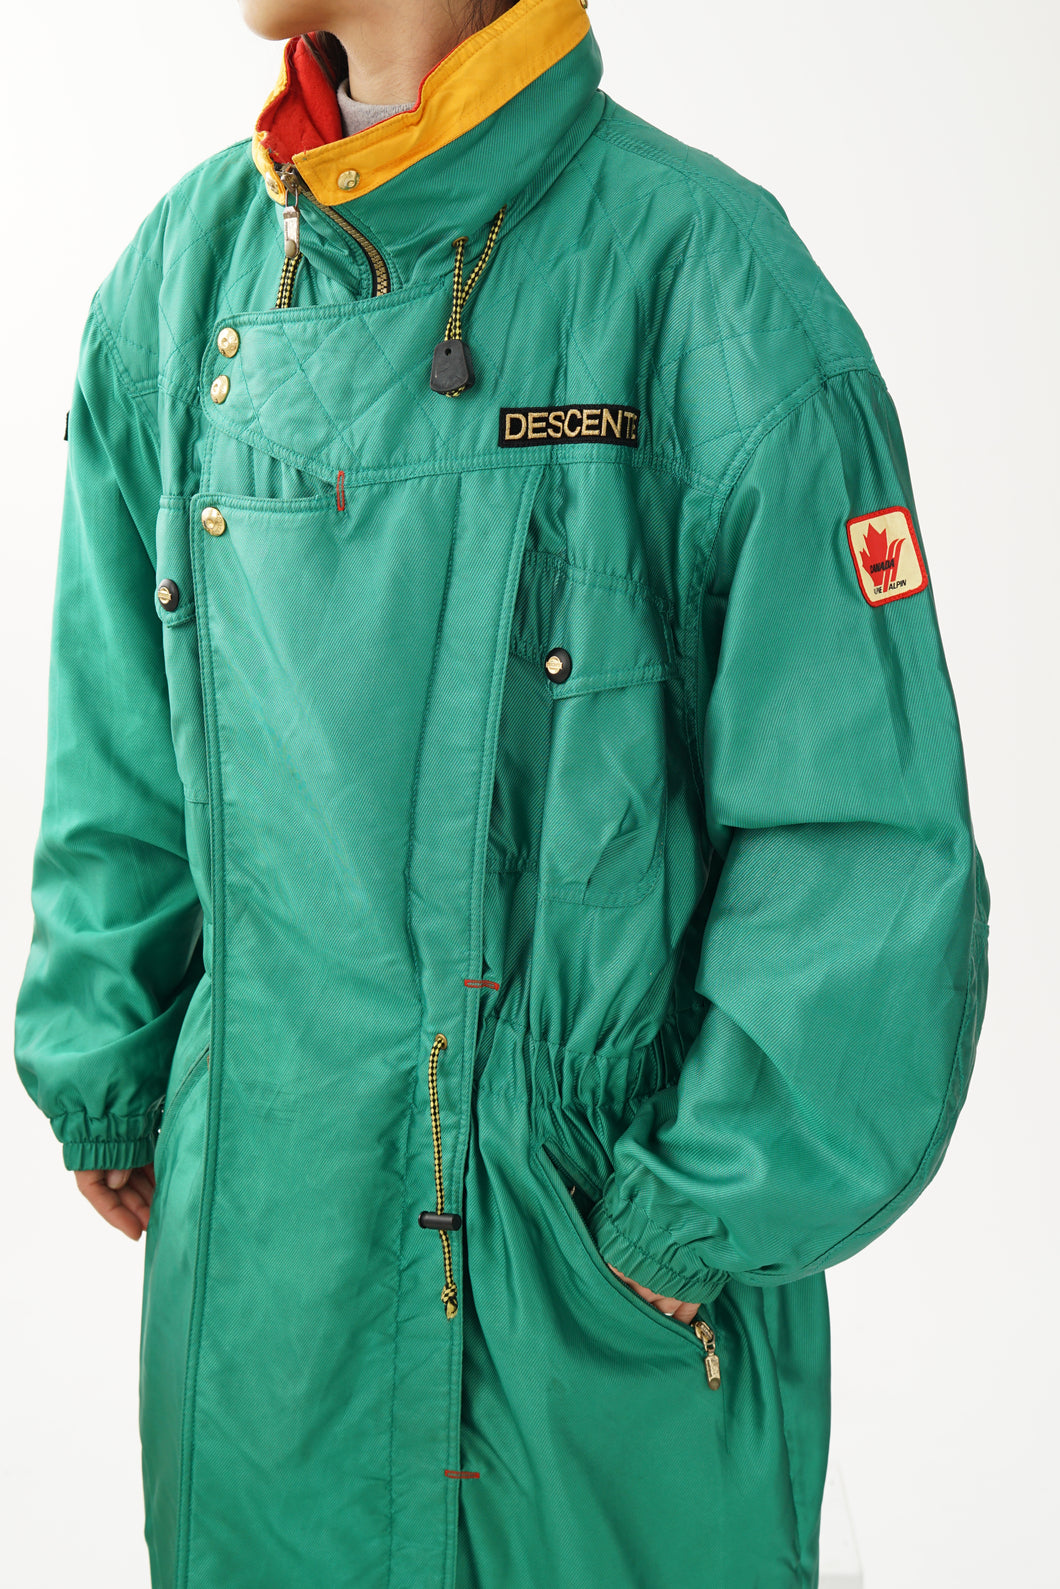 Manteau long de ski vintage Descente vert flash pour homme taille L